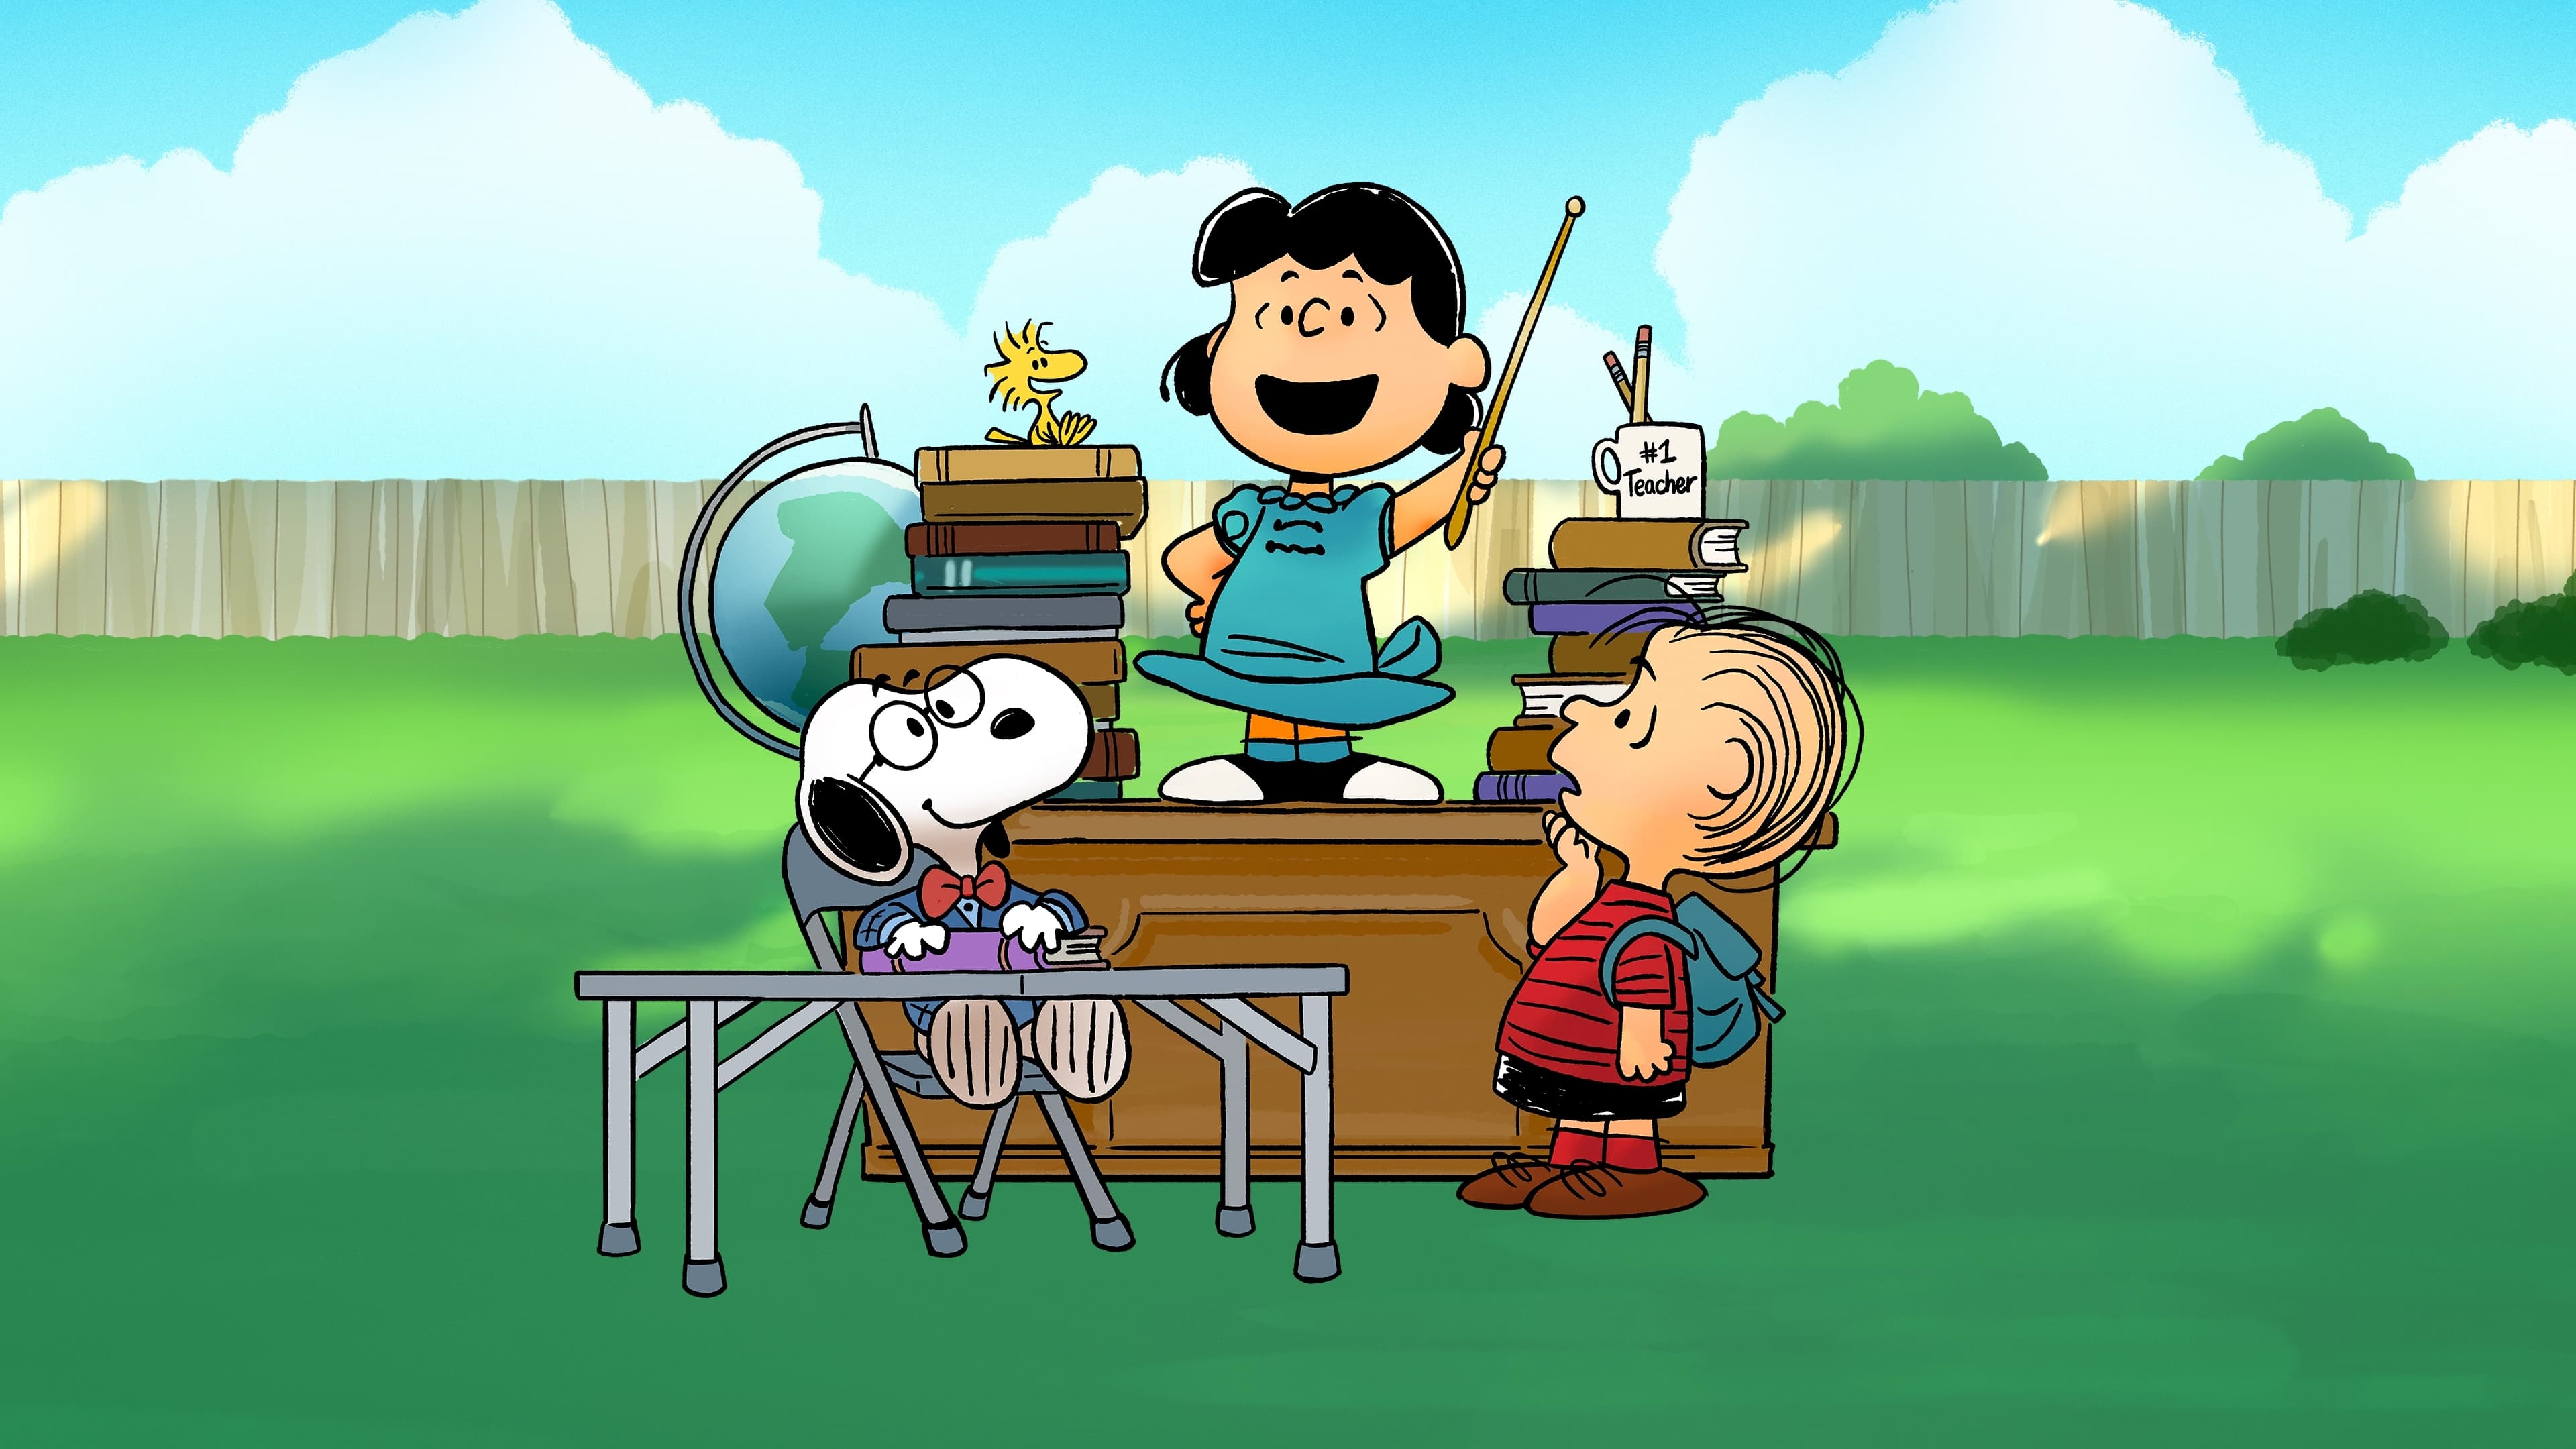 Snoopy presenta: El colegio de Lucy